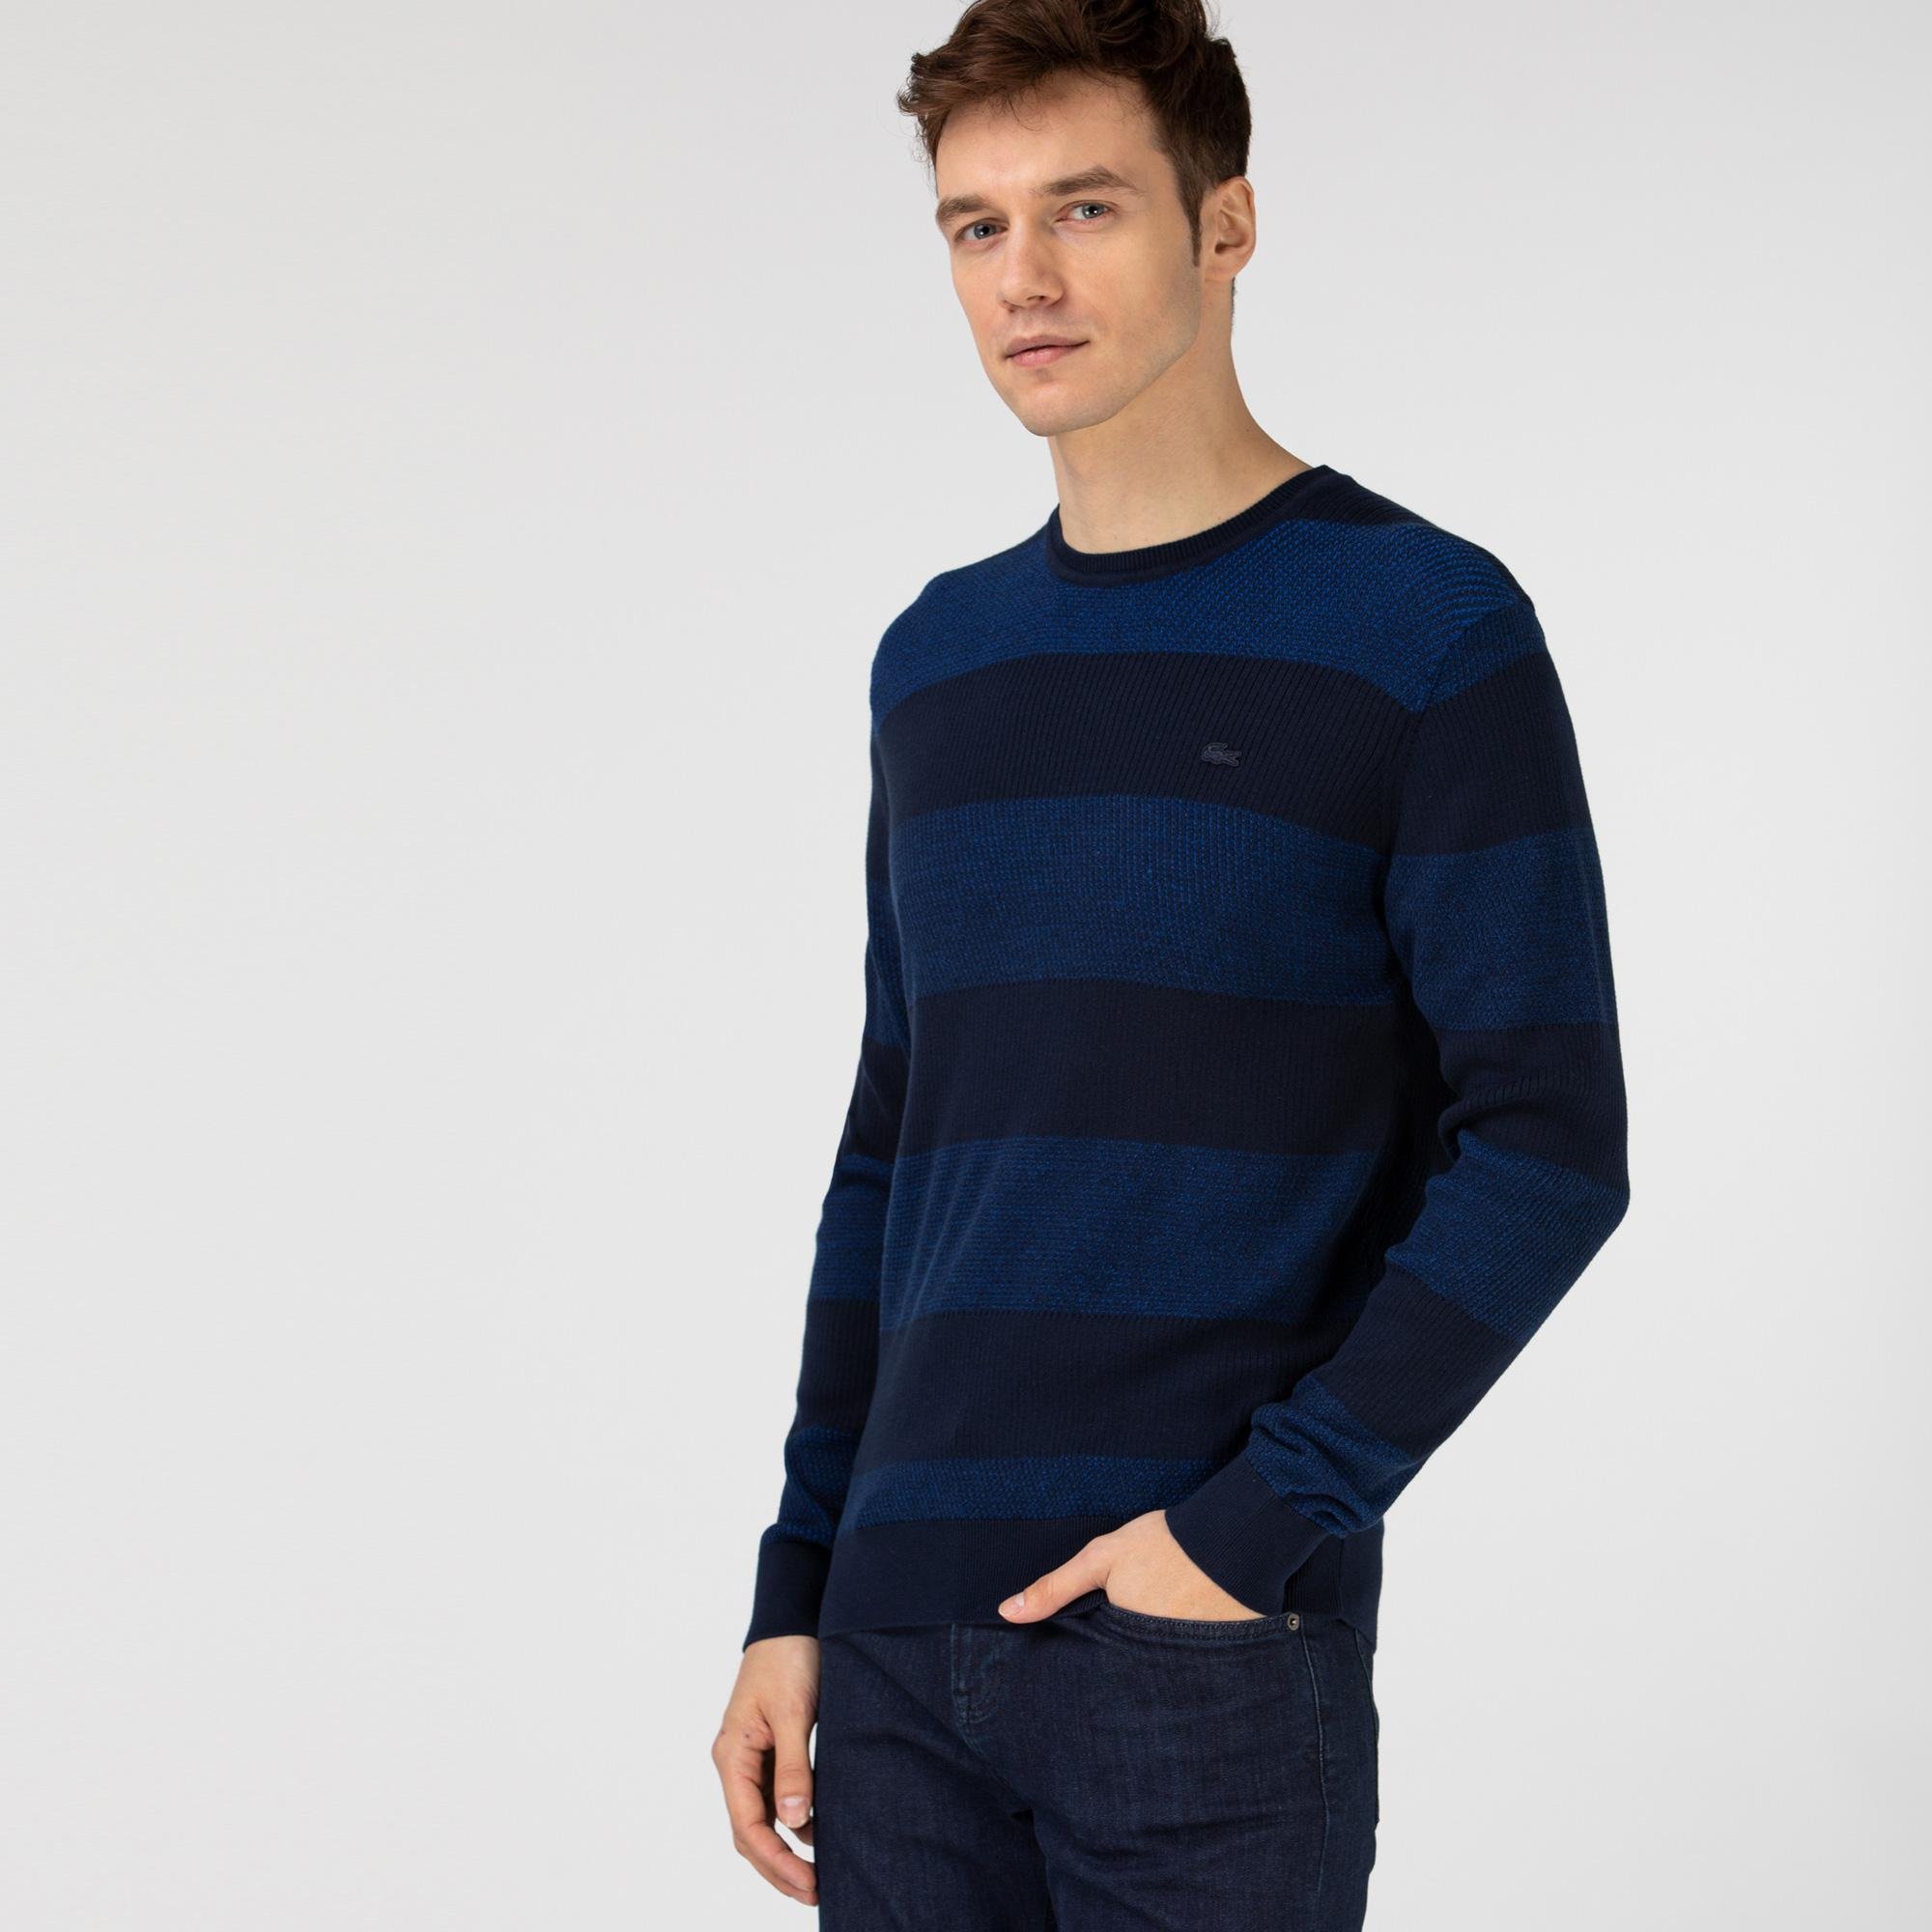 Lacoste Men's Knitwear Sweater